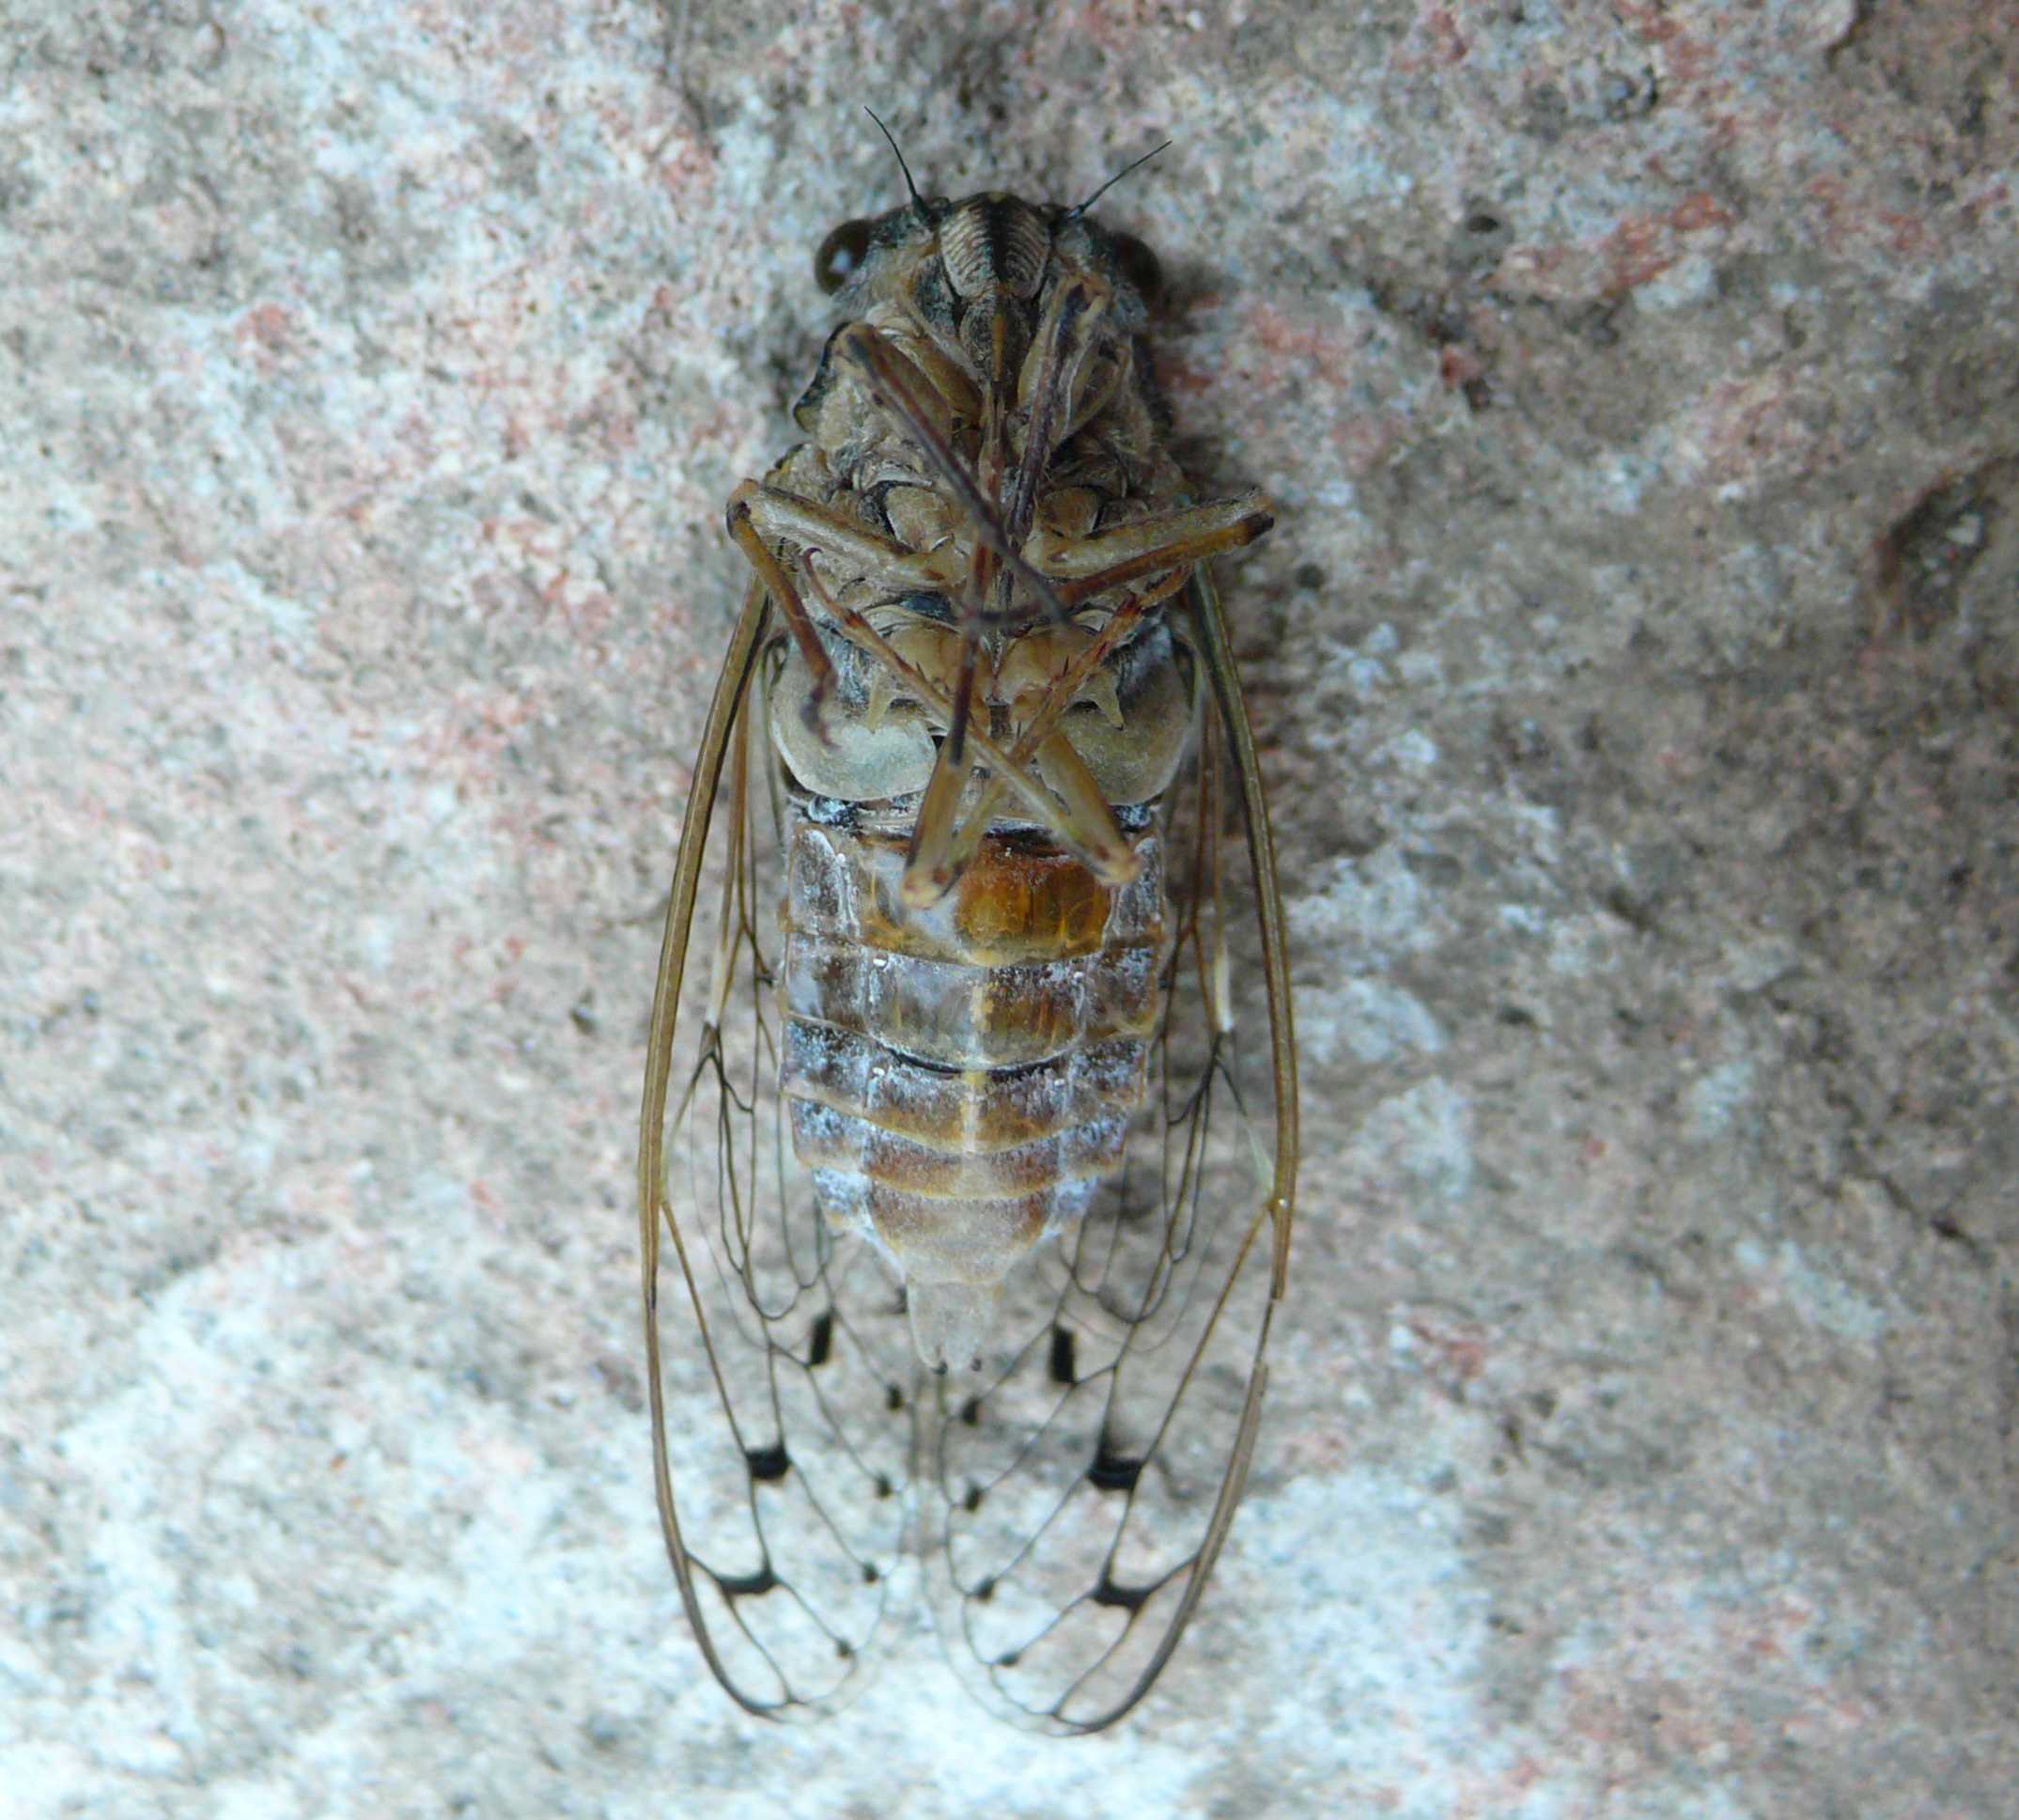 Esuvie in giardino - Cicada orni